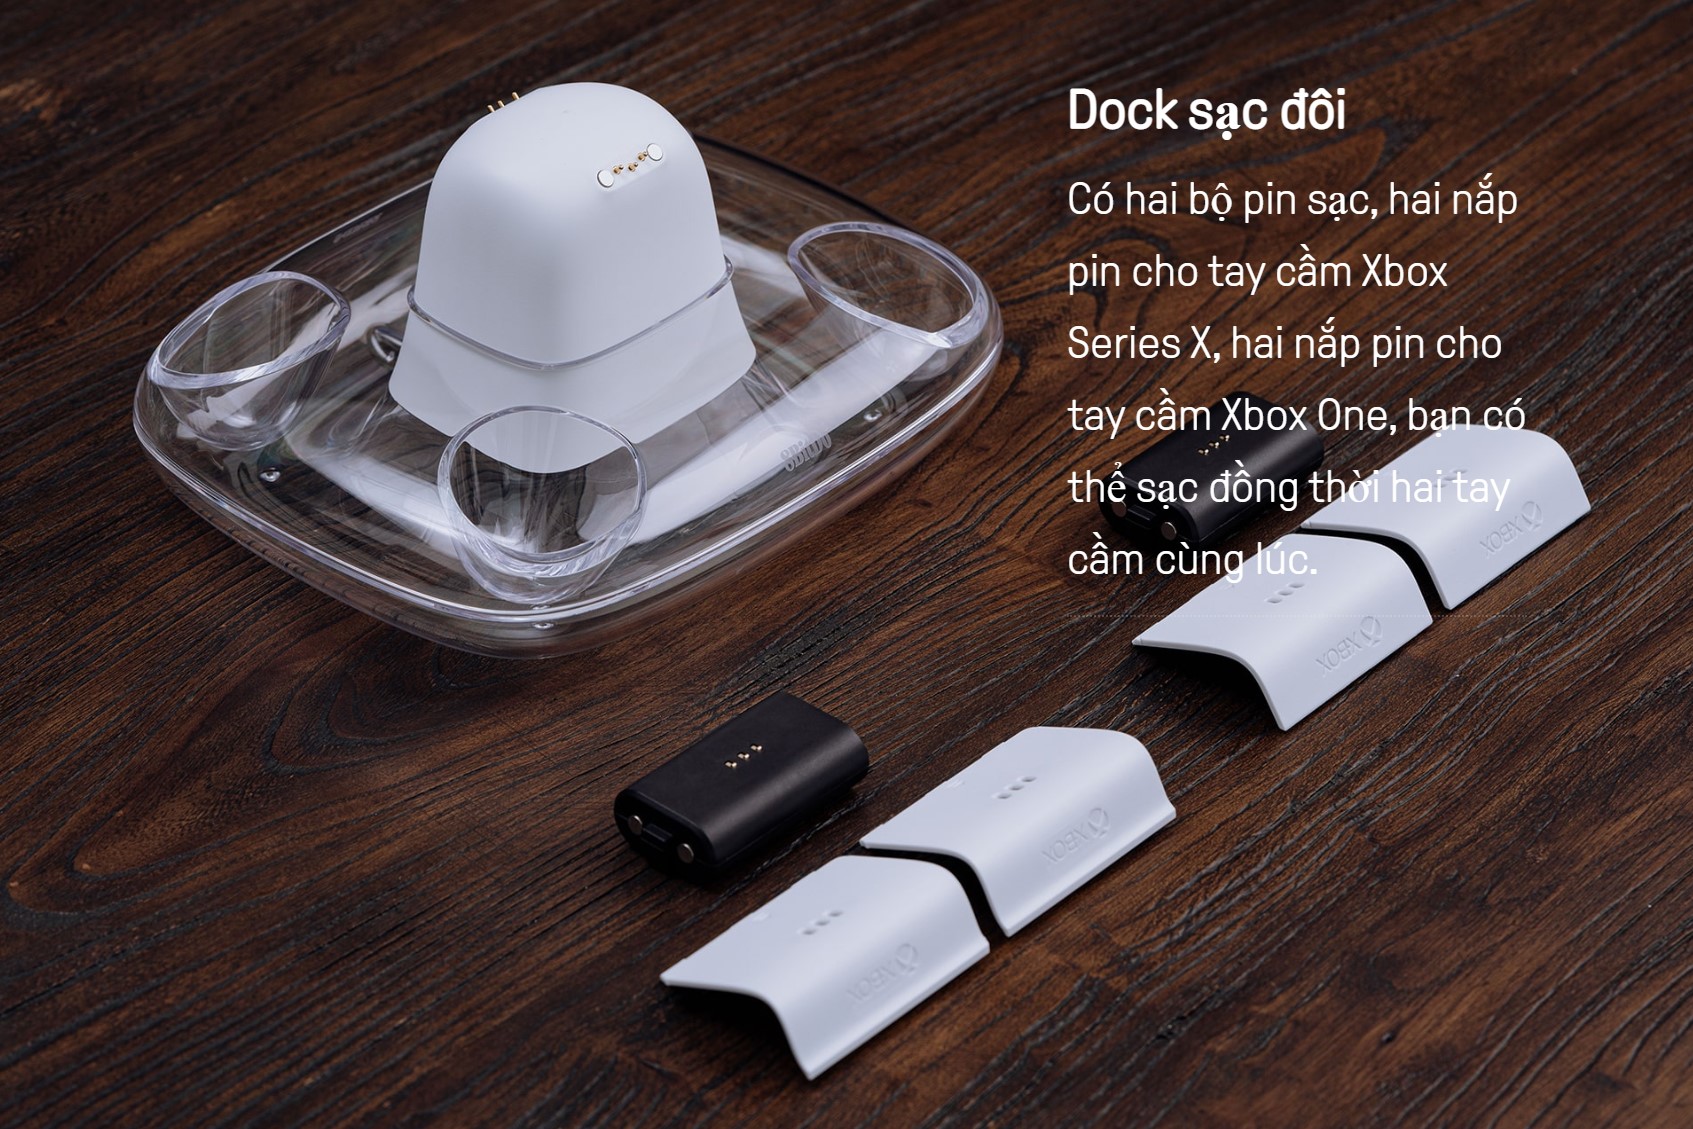 Dock Sạc 8BitDo đi kèm 2 đôi pin sạc 1100mAh dùng cho tay Xbox One/One S/Series X màu đen 5